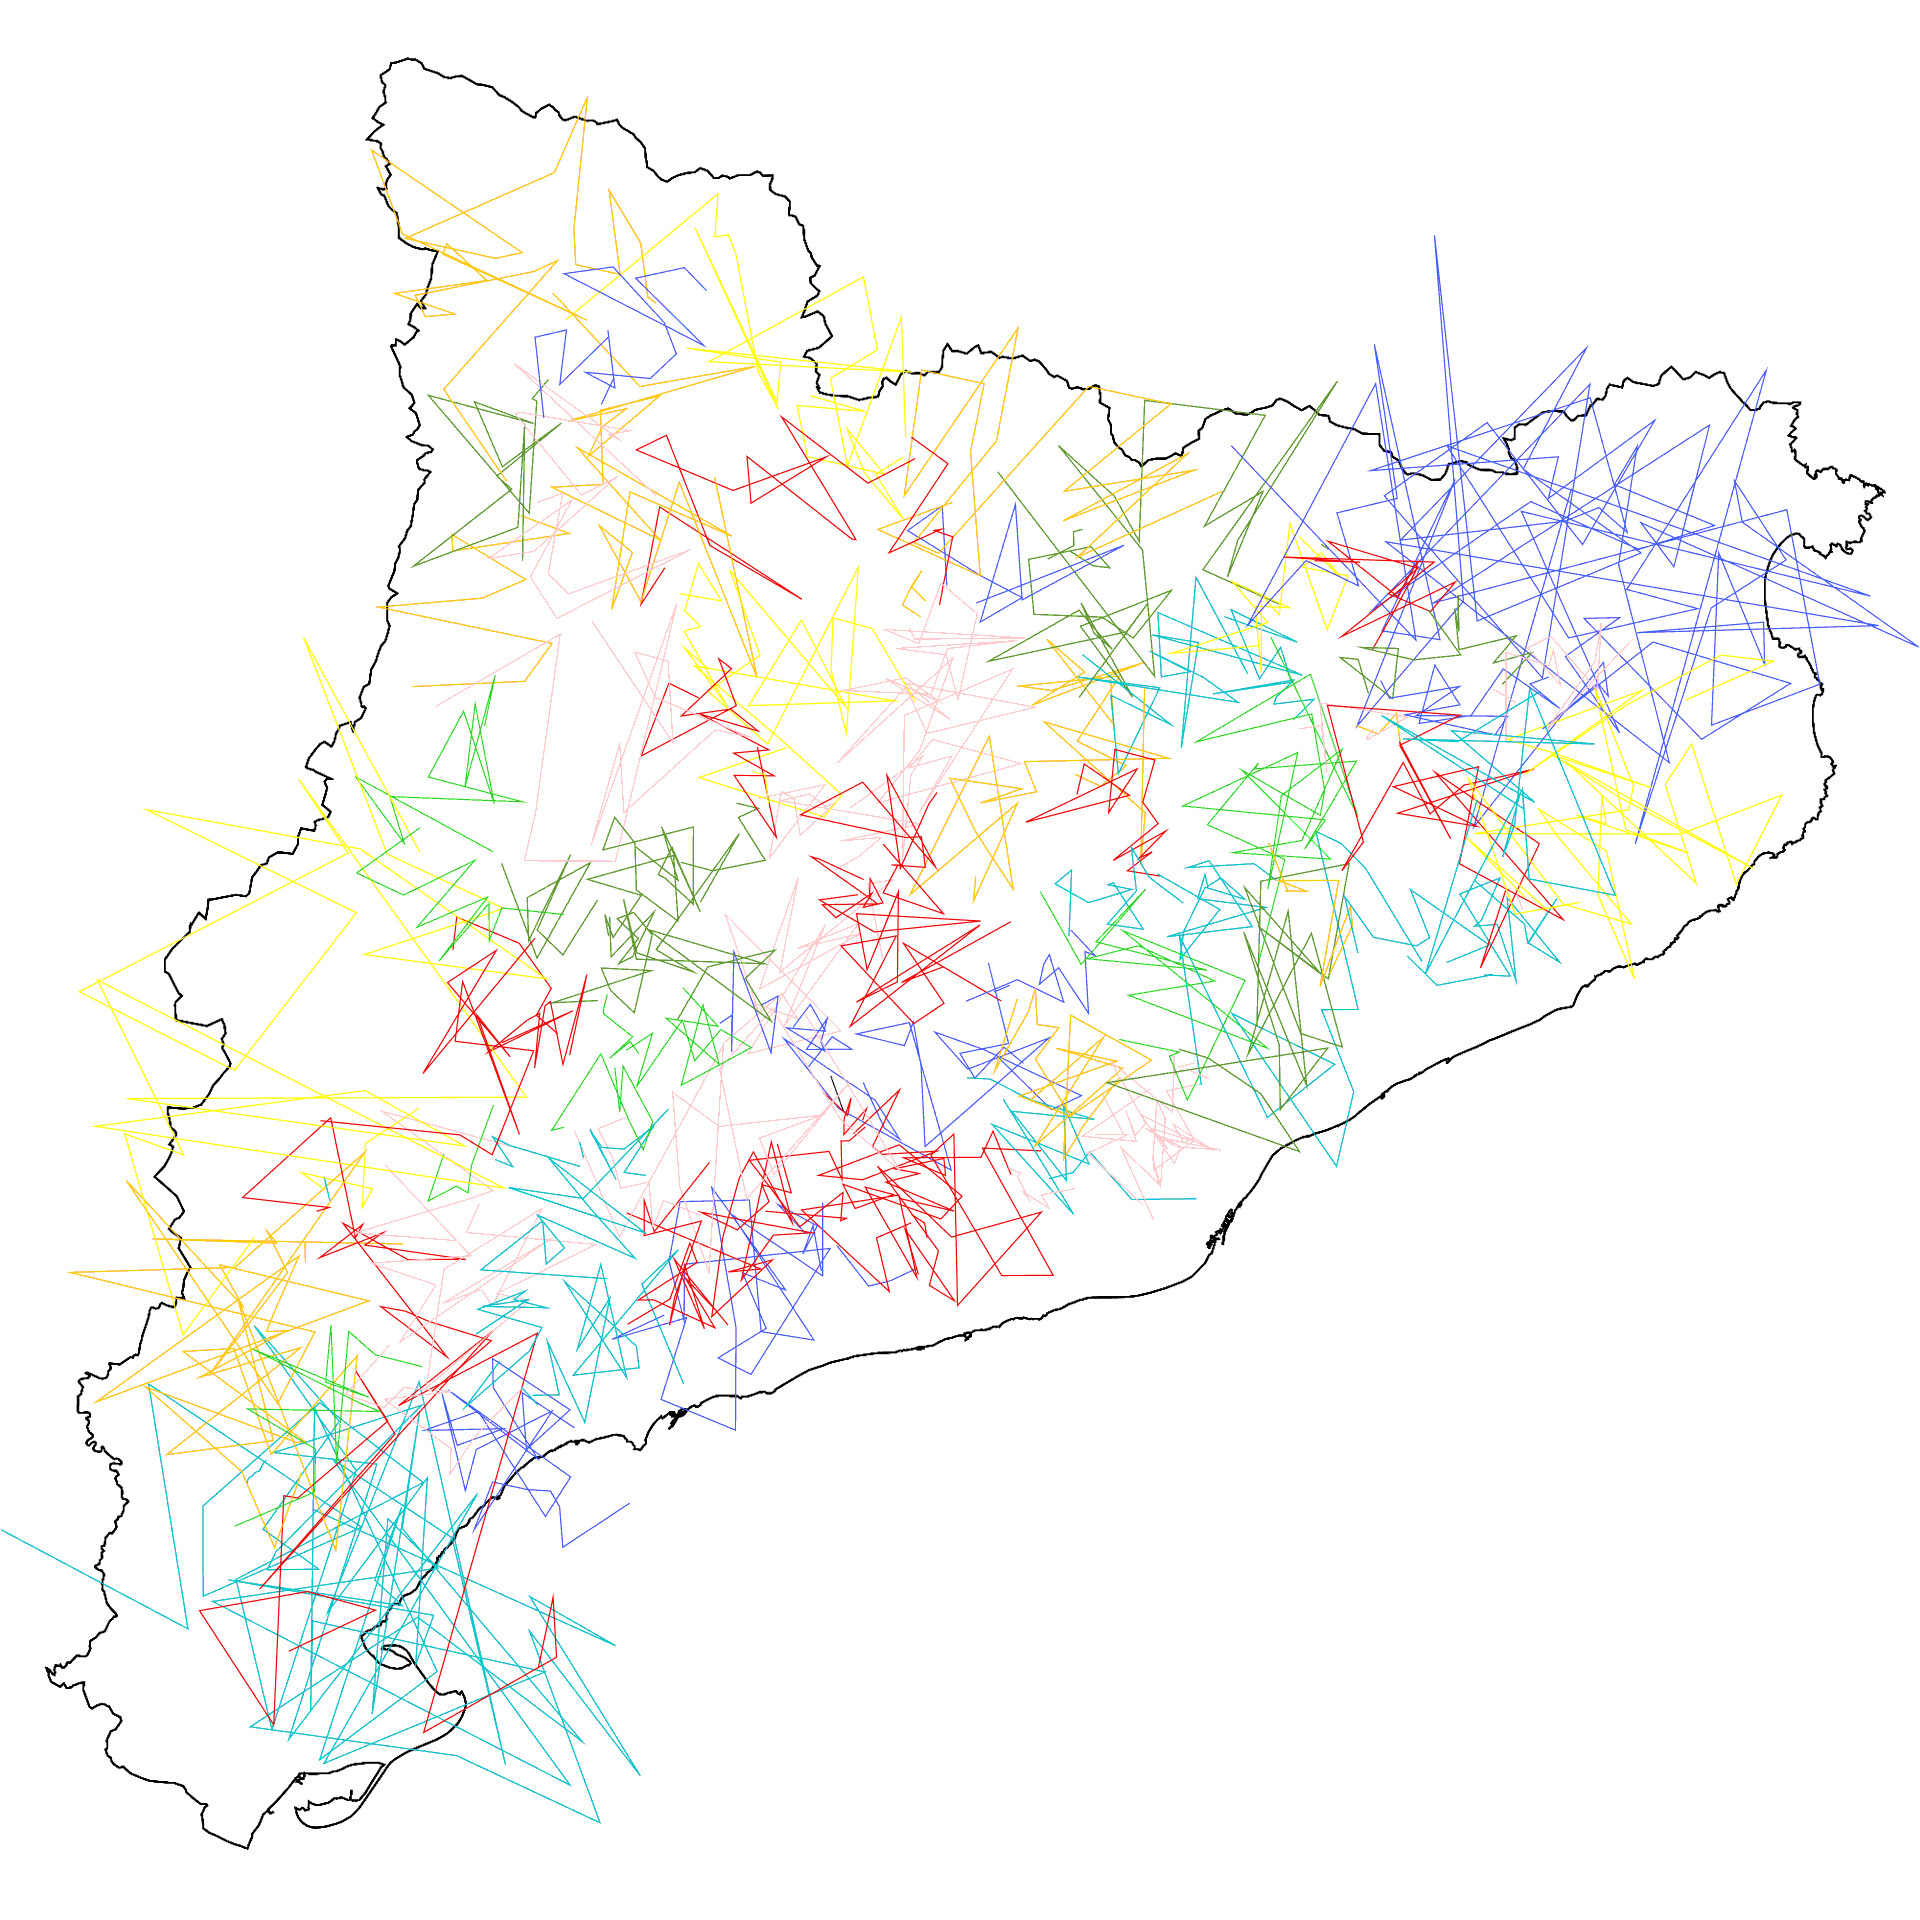 Mapa animat de Catalunya amb diverses línies superposades que simbolitzen les possibles connexions fetes entre tota la regió